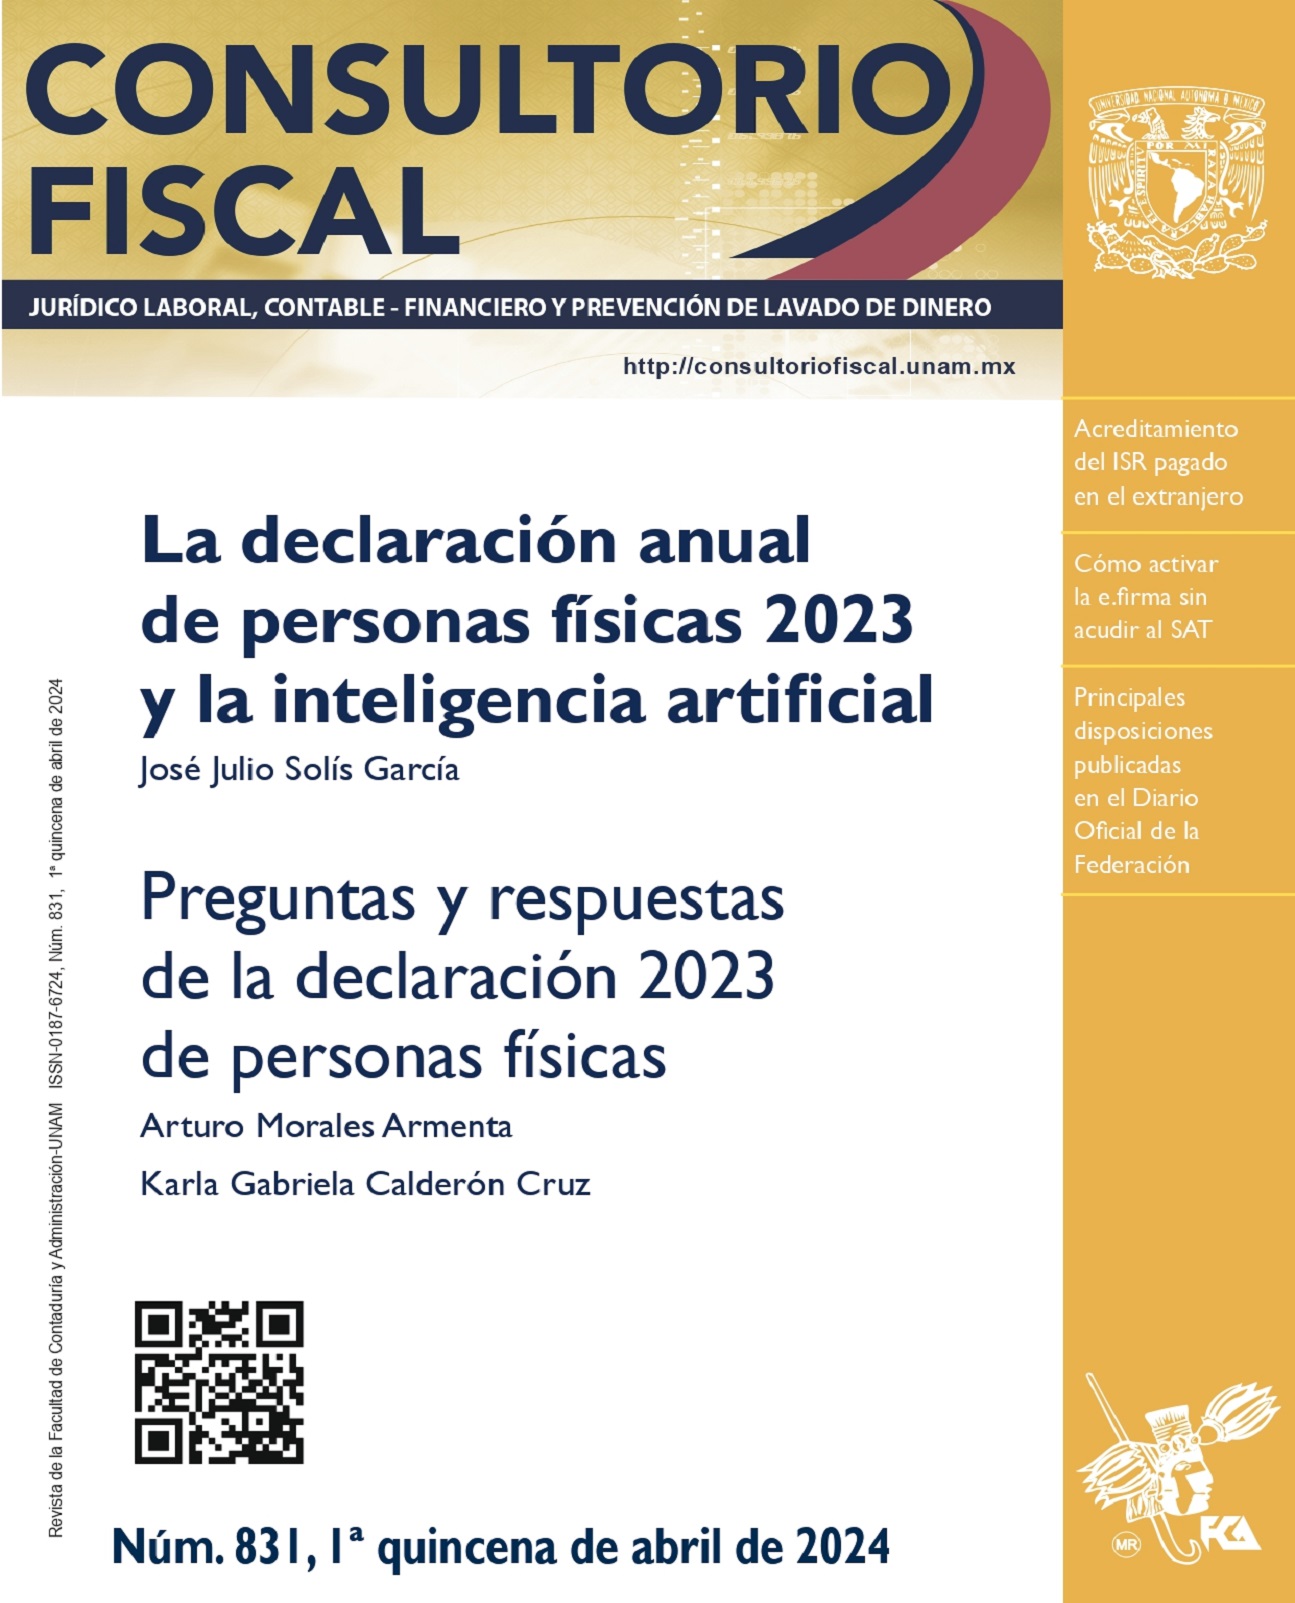 La declaración anual de personas físicas 2023 y la inteligencia artificial